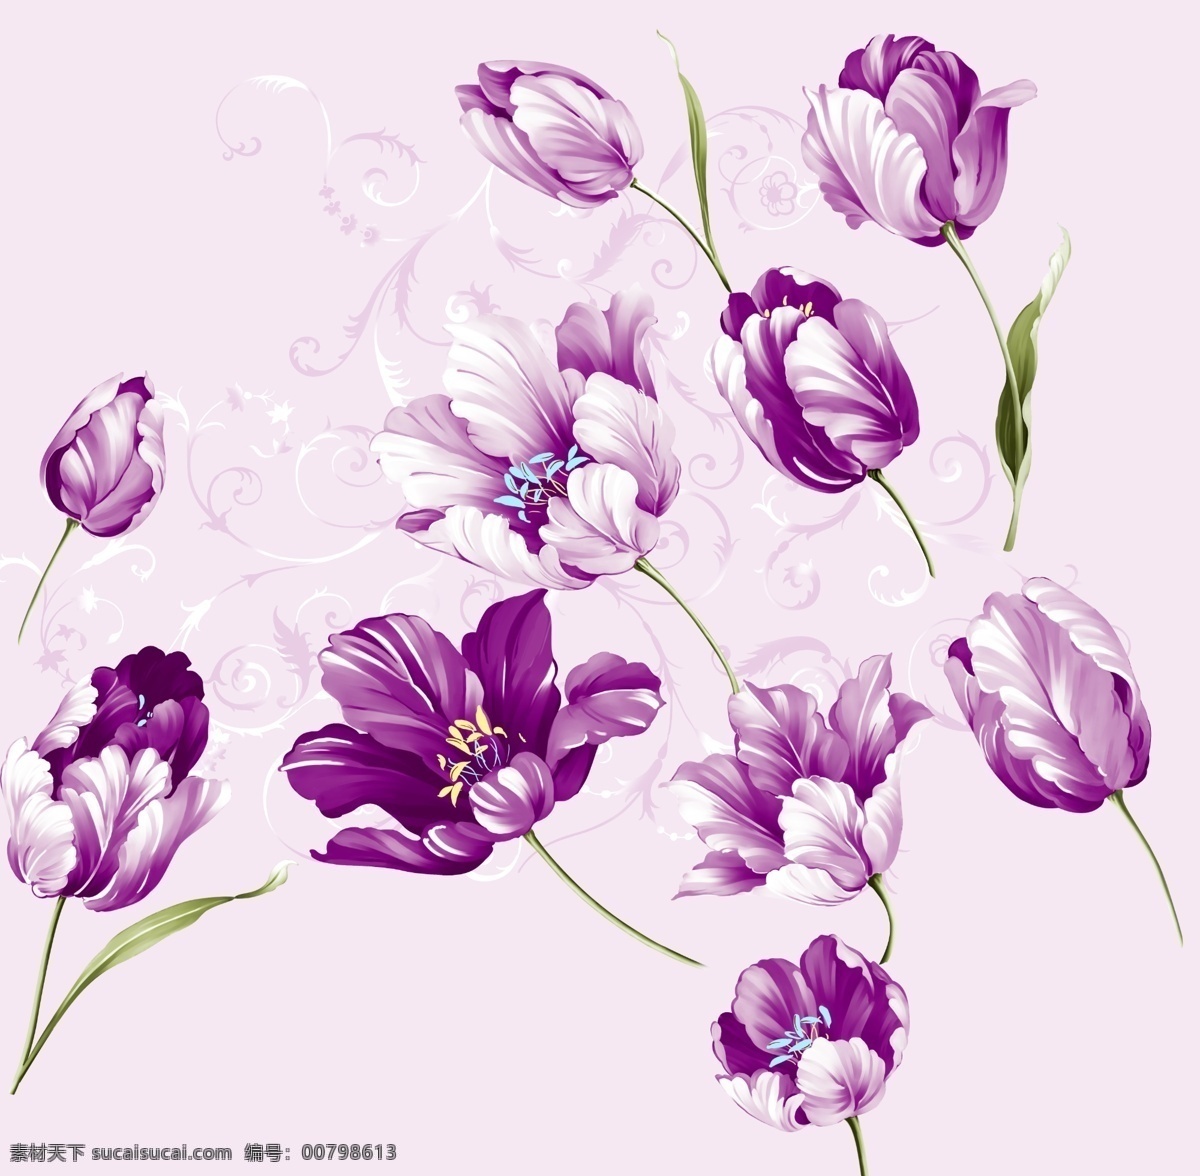 花卉 花卉素材下载 花卉模板下载 郁金香 欧式 卷草纹 纹样 图案 背景素材 绿叶 源文件